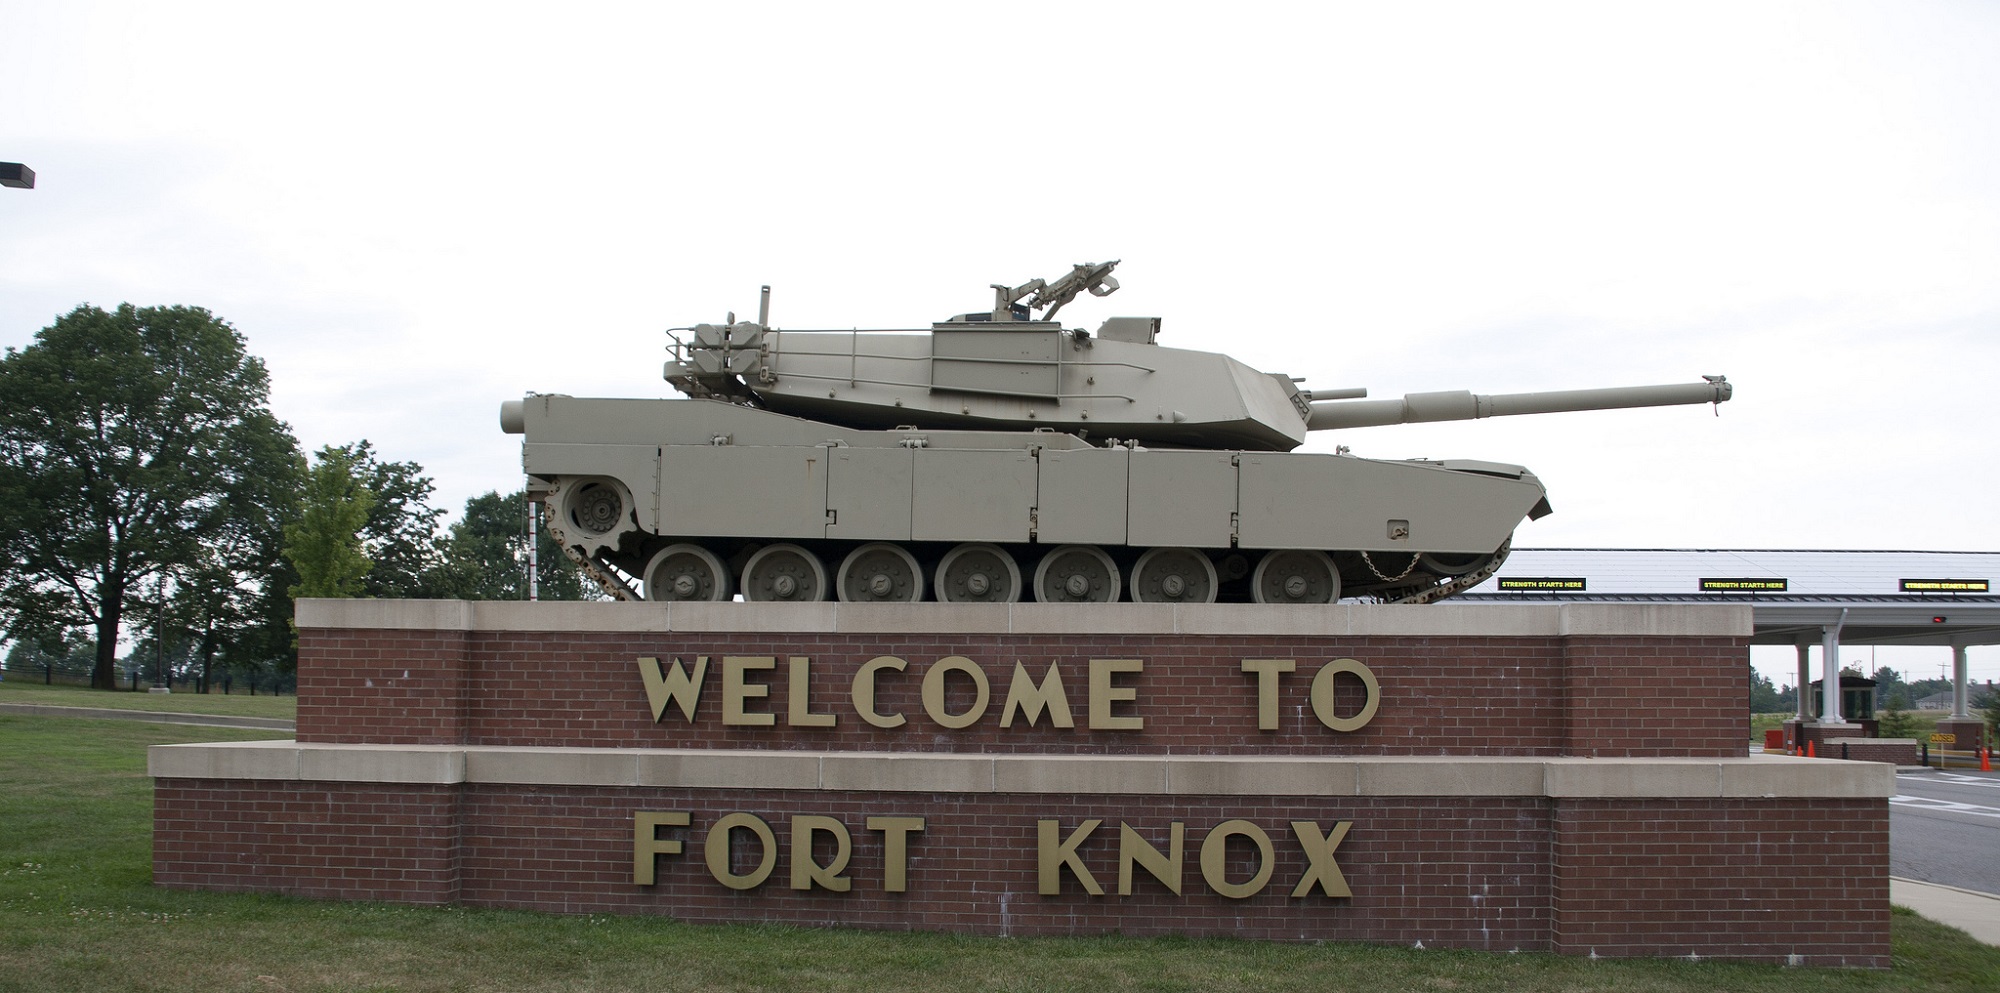 Fort knox. Американская база Форт Нокс. Форт Нокс Военная база США. Форт Нокс хранилище золотого запаса США. Форт-Нокс в Кентукки.